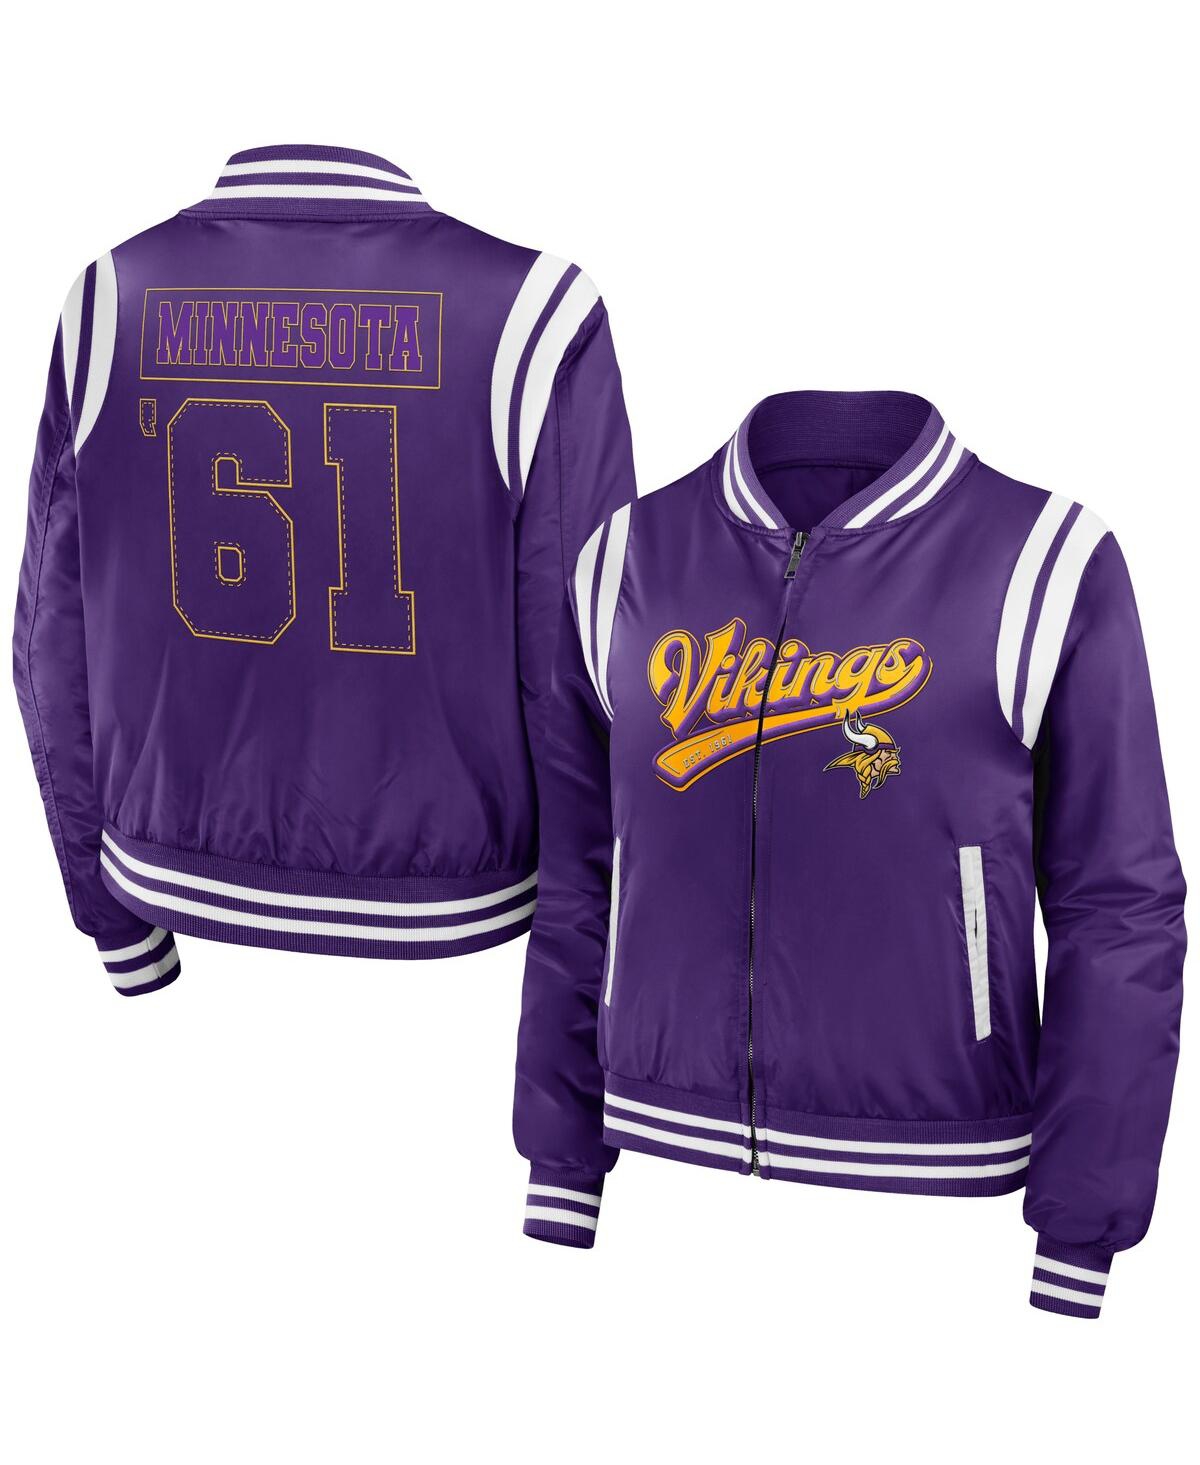 Wear By Erin Andrews Women's  Purple Minnesota Vikings Bomber Full-zip Jacket